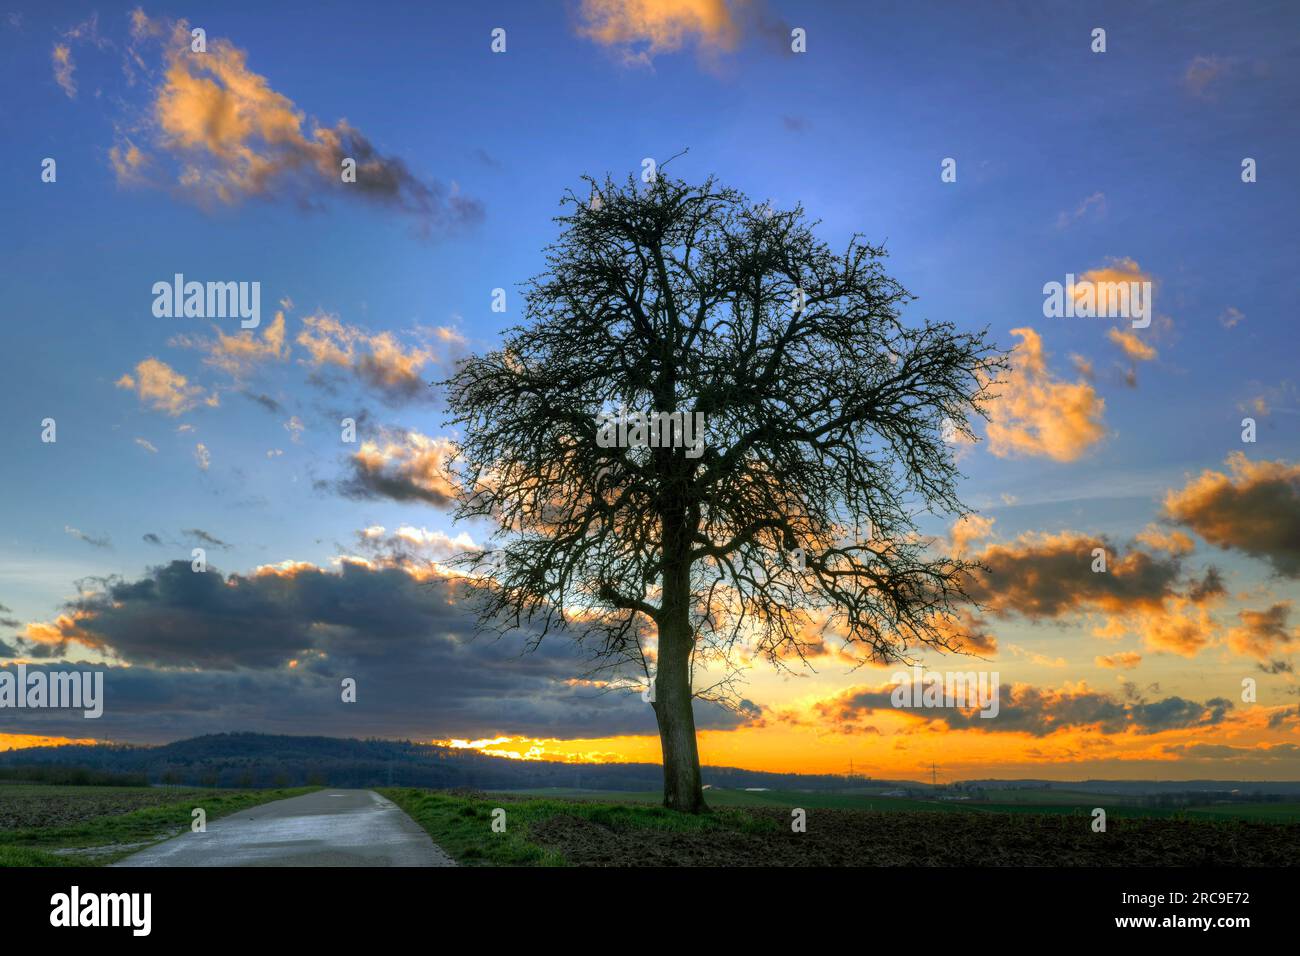 Baum im Sonnenuntergang bei Schwaigern im Kraichgau, Landkreis Heilbronn, Baden-Württemberg; Süddeutschland, Deutschland, Europa. Stock Photo